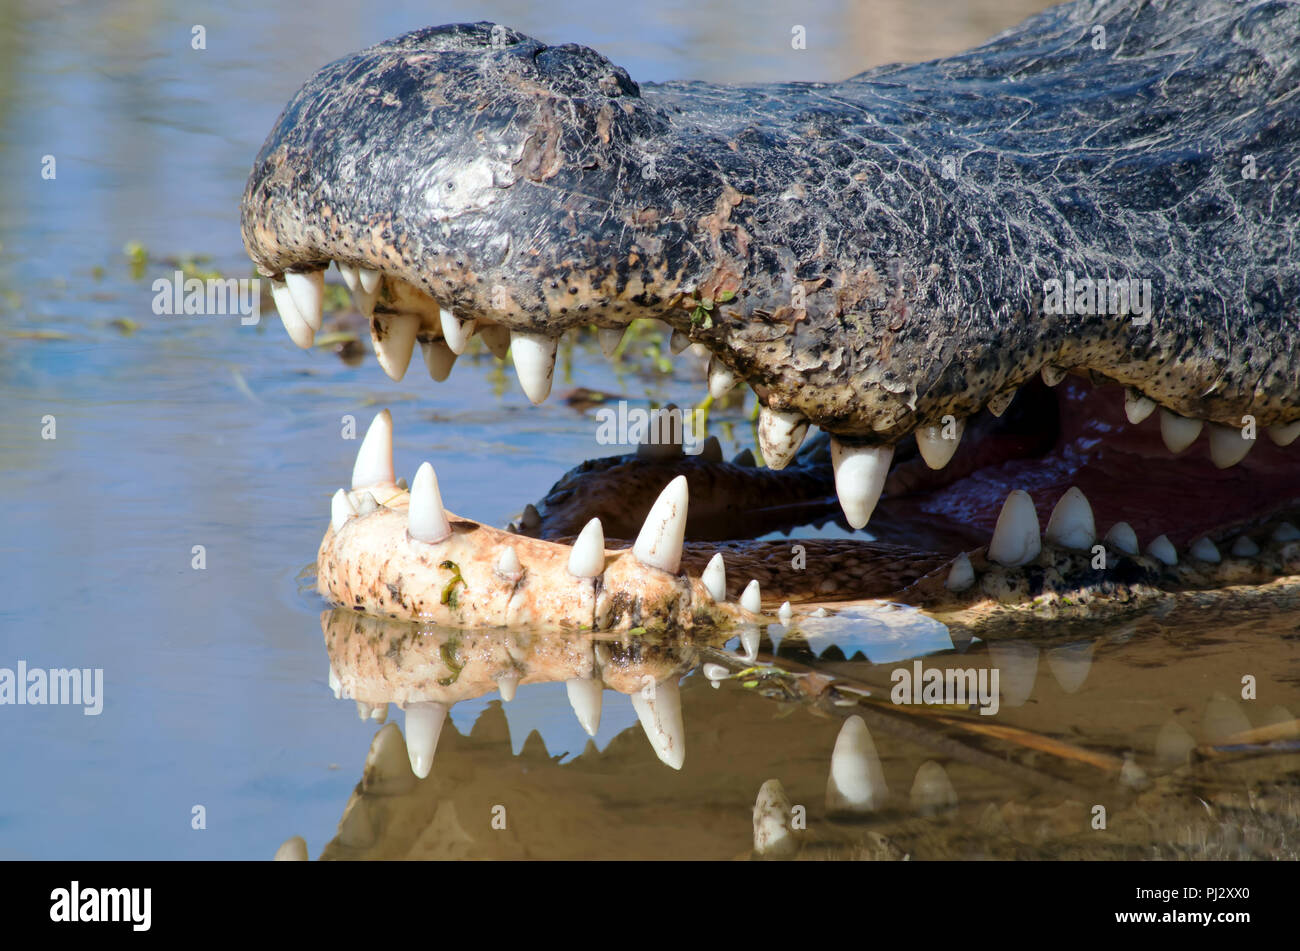 Ein Schließen der Schnauze eines amerikanischen Alligator zeigt Zähne in den Sumpf Wasser wider. Zum Beispiel: Leonabelle Turnbull Birding Center in Port Aransas, TX. Stockfoto